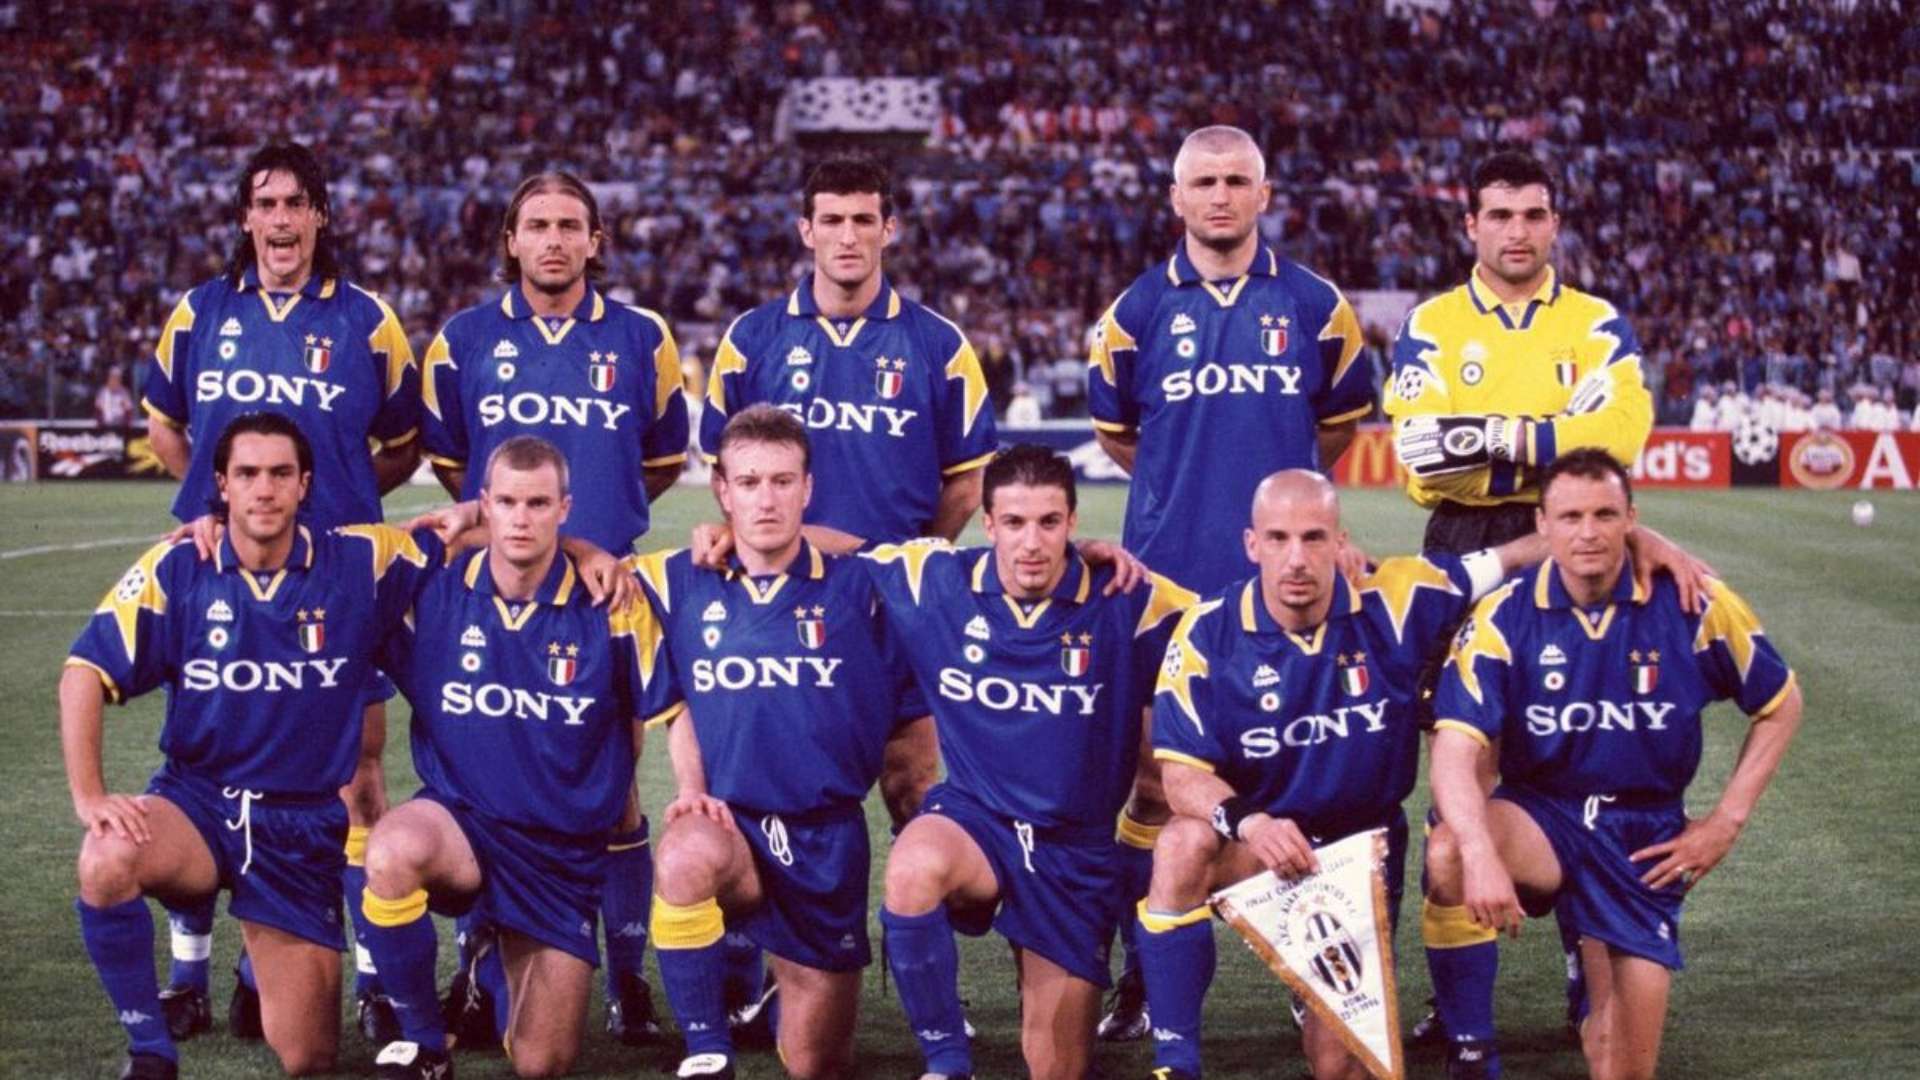 Juventus 1996